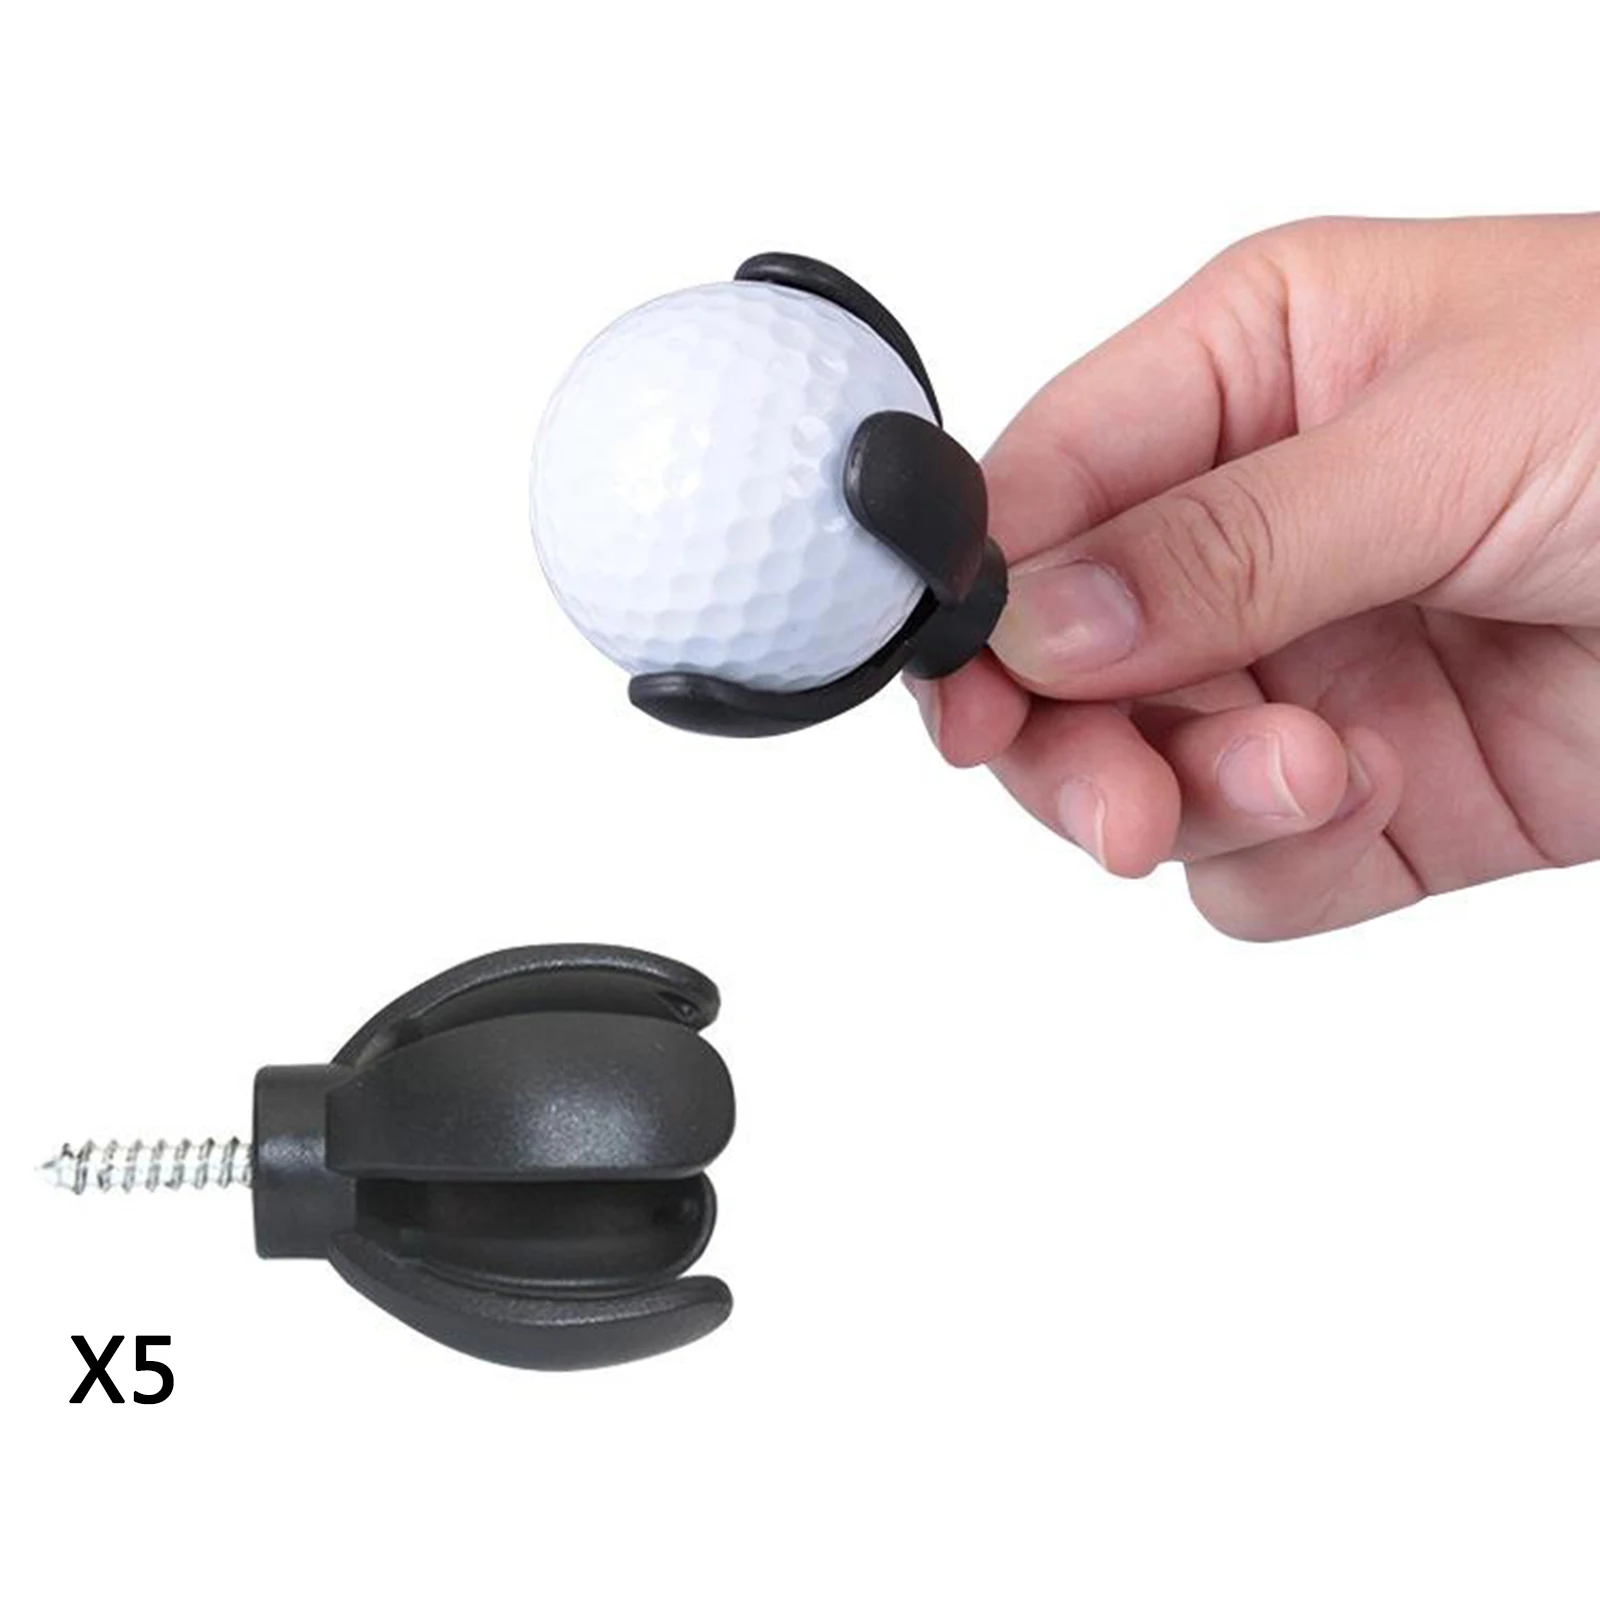 5pcs 4-Prong Golf Ball Pick Up Retriever Grabber Sucker Claw For Putter Grip,Sucker Tool Golf Accessory